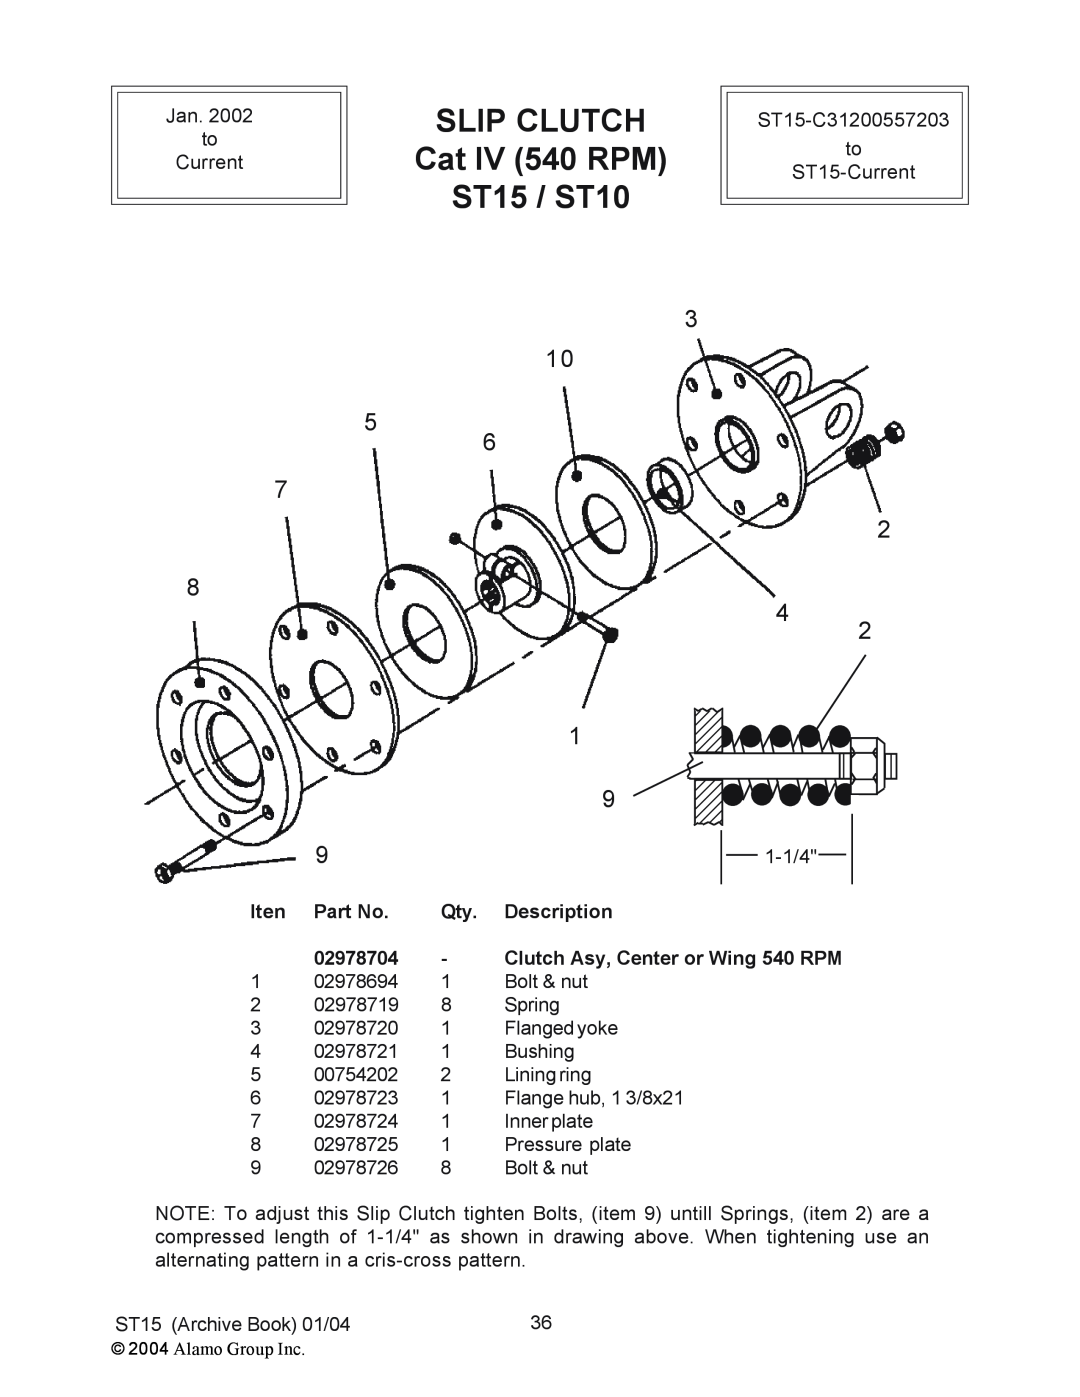 Alamo manual SLIP CLUTCH Cat IV 540 RPM ST15 / ST10, Iten, Description, 02978704, Clutch Asy, Center or Wing 540 RPM 